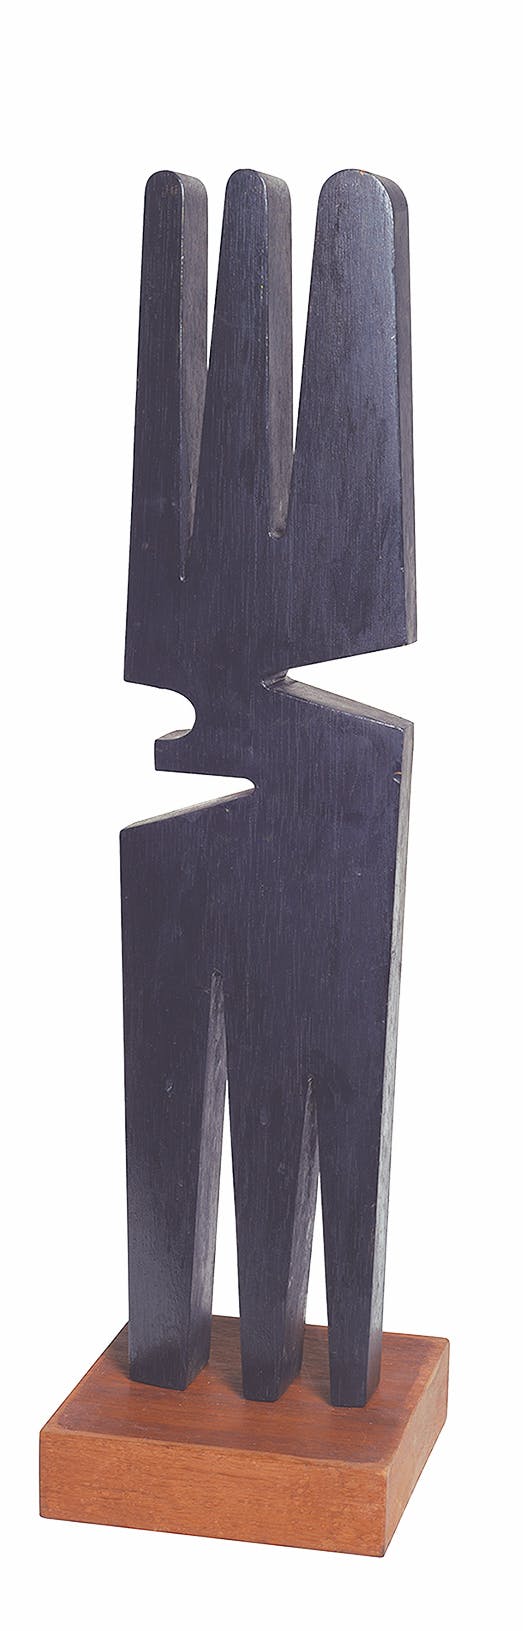 An abstract, black sculpture on a wood platform.